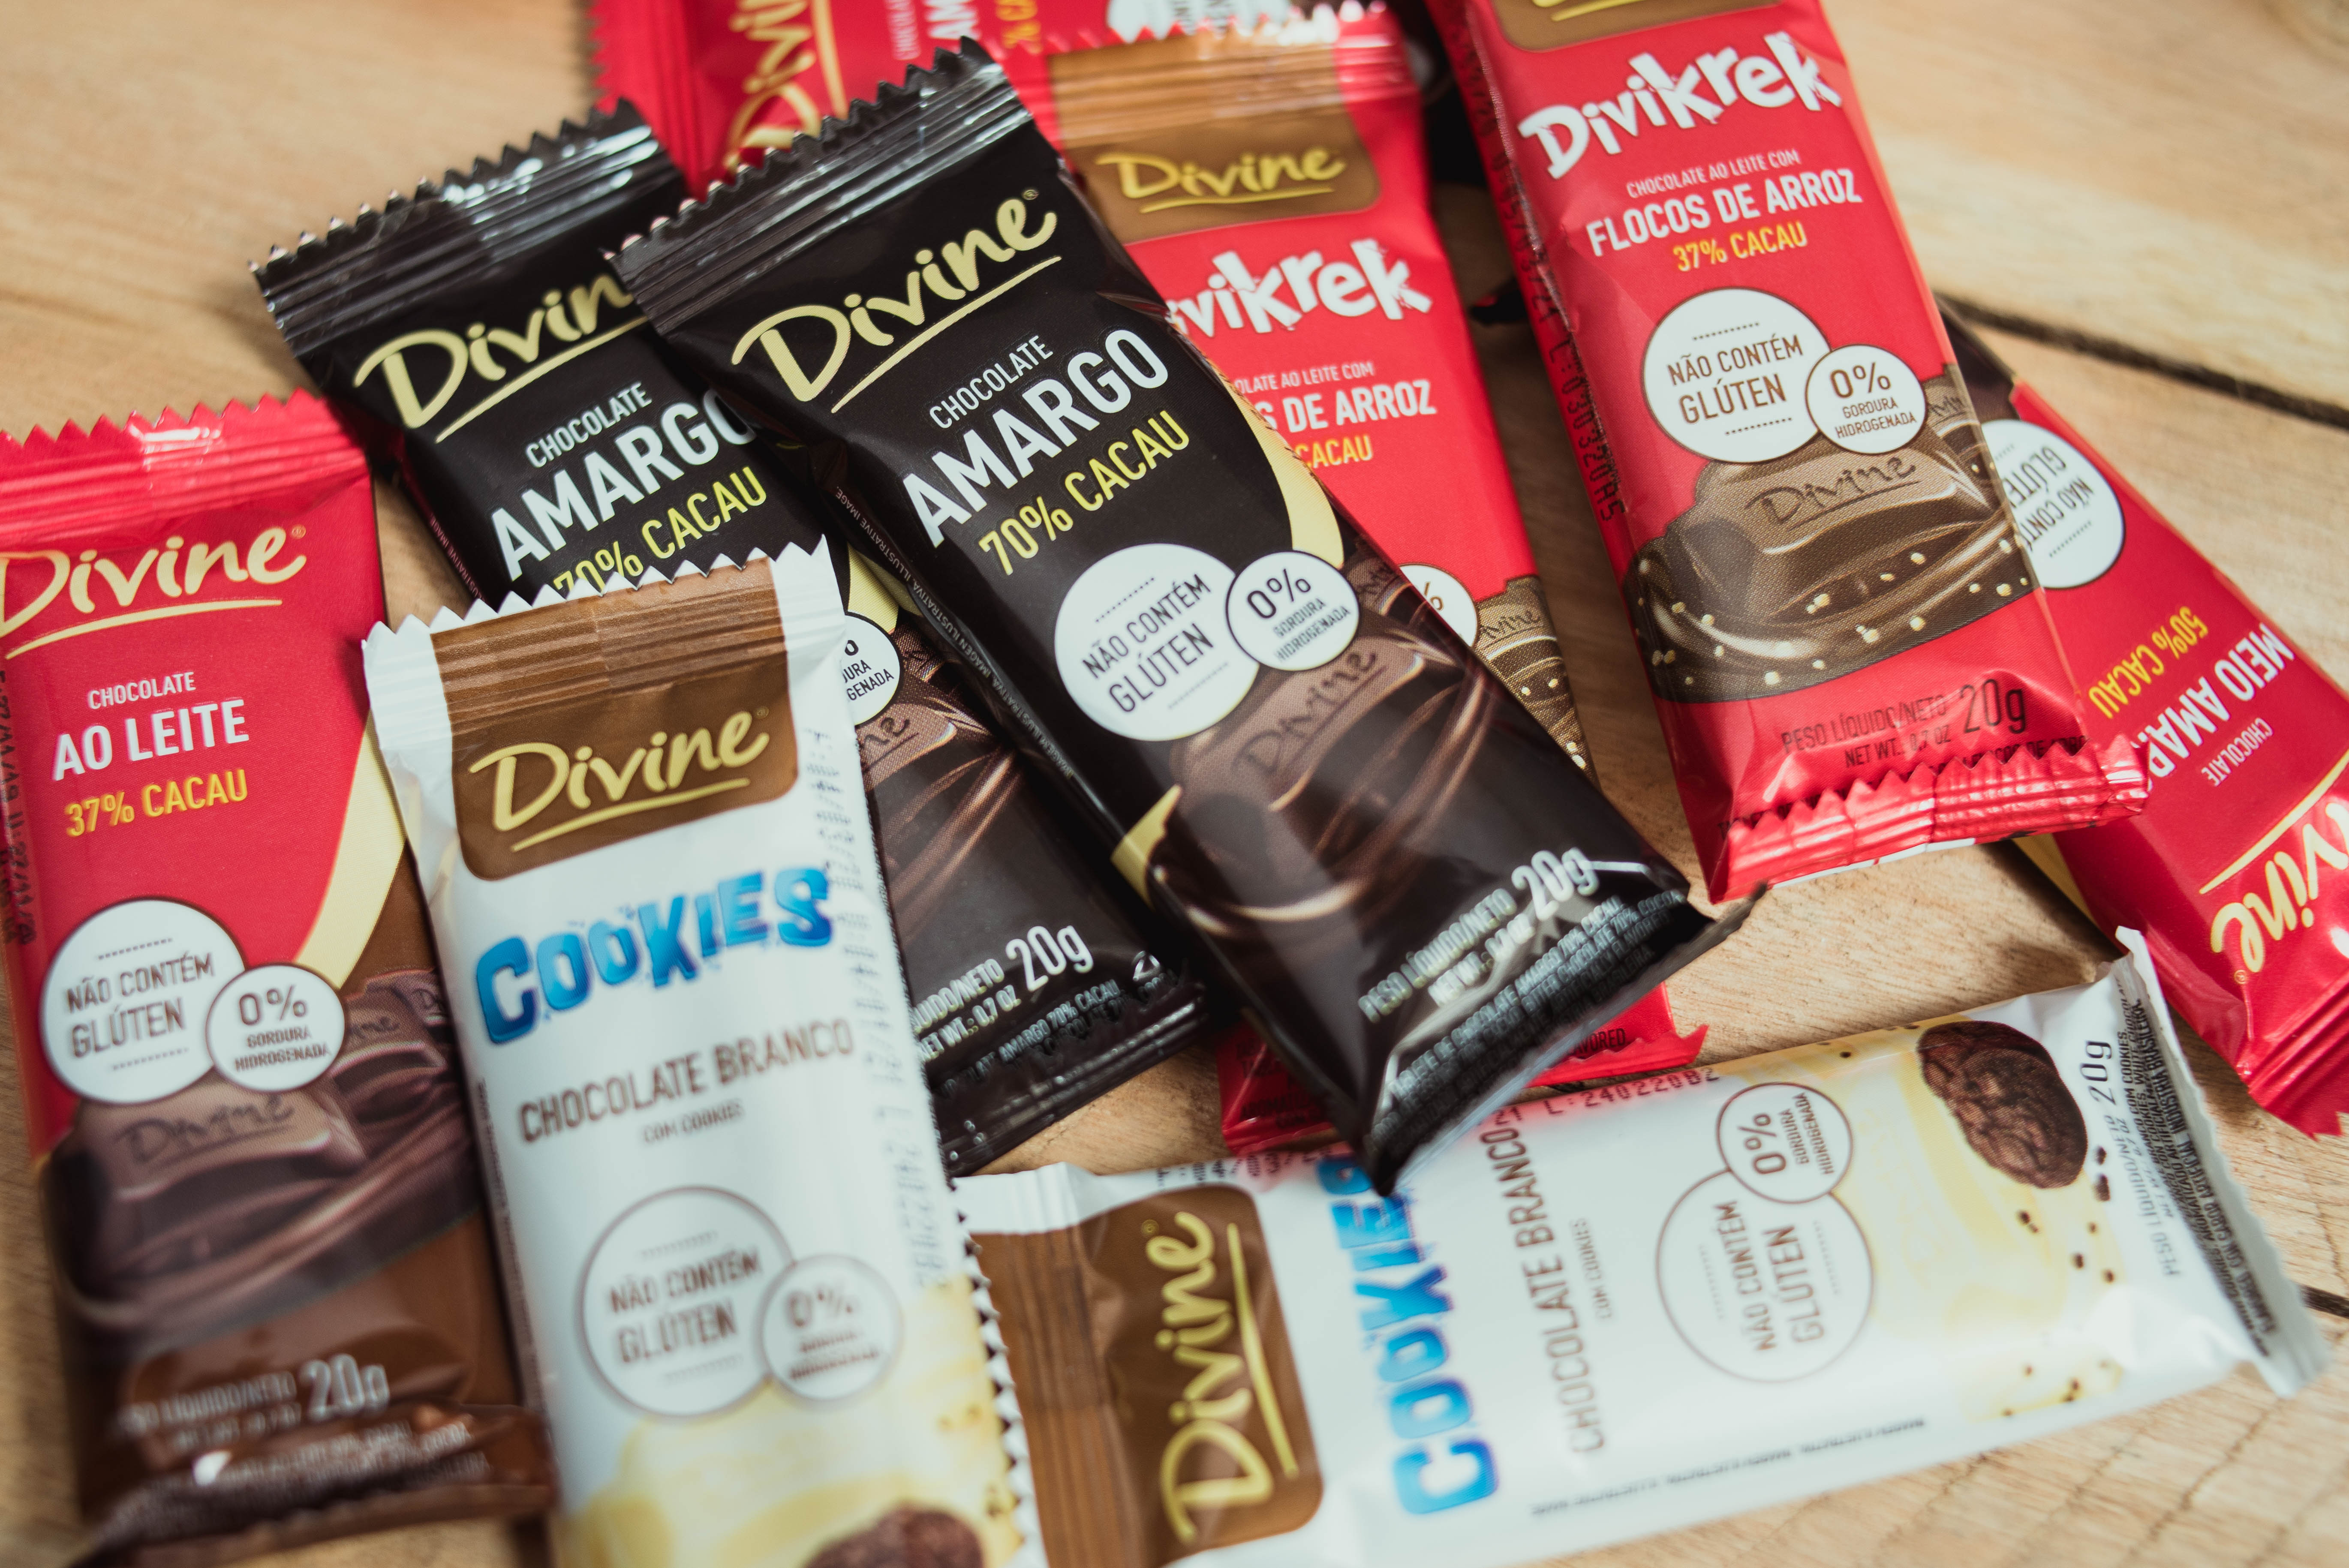 O chocolate Divine é saudável mesmo. Descubra aqui